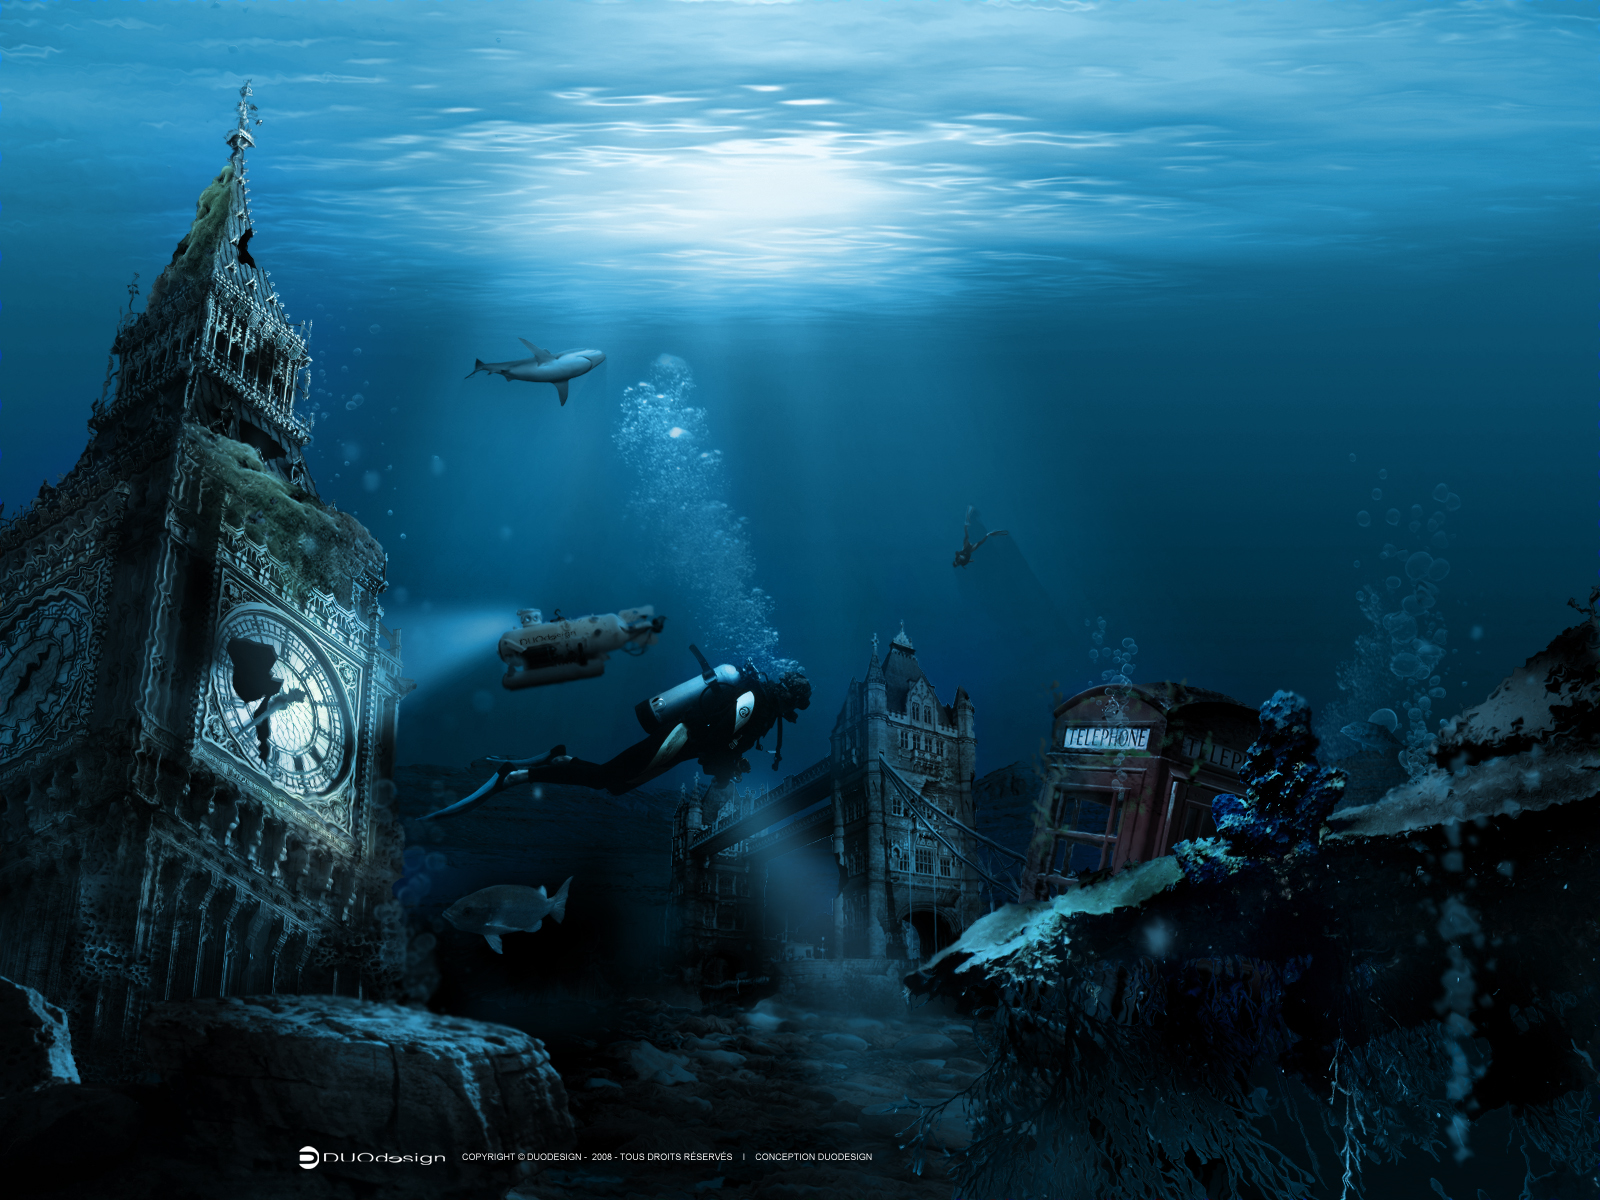 Fond d'ecran Londres sous la mer